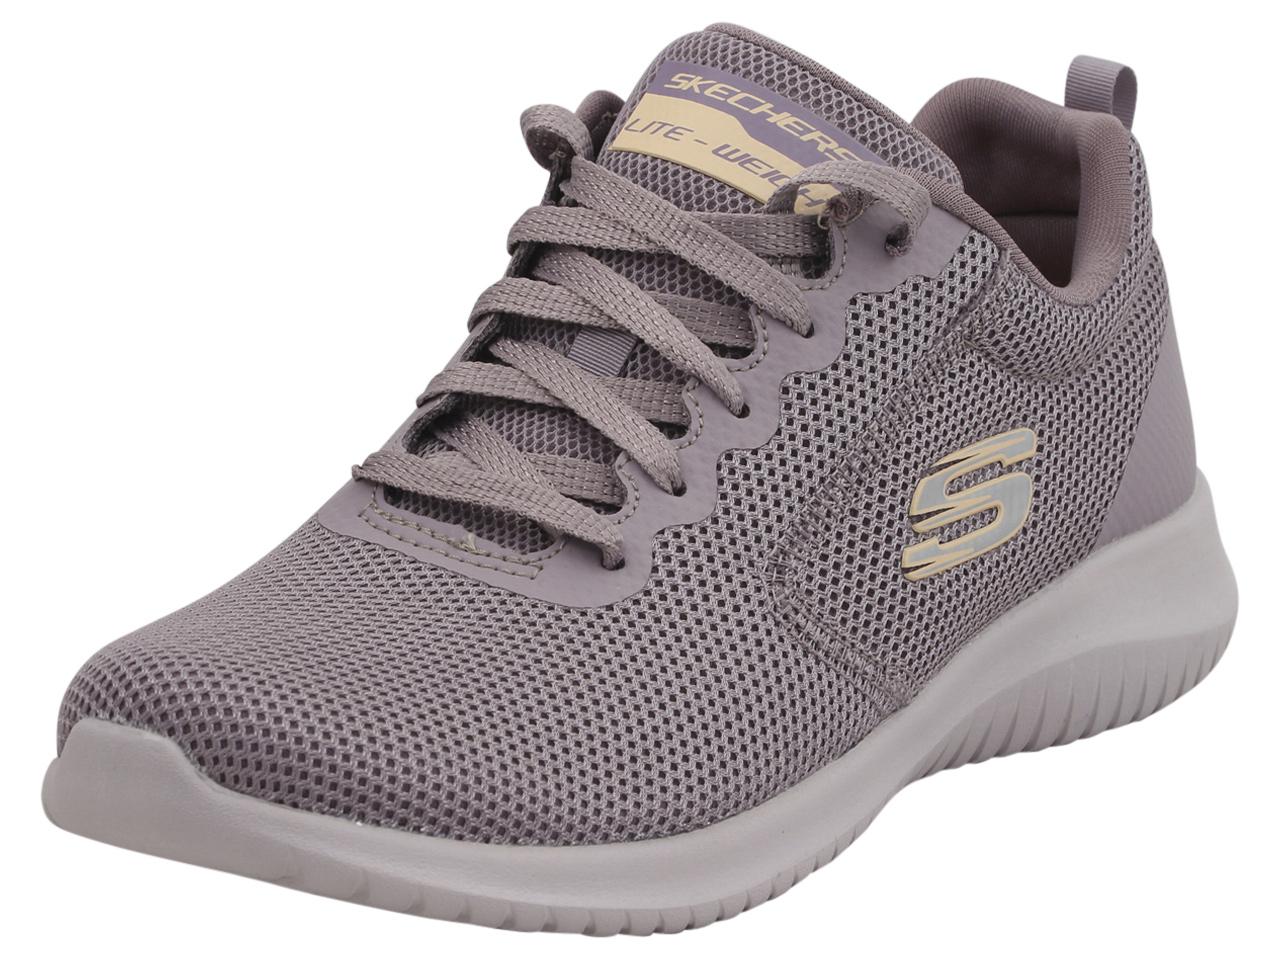 Skechers Women's Ultra Flex Free Spirits Memory Foam Sneakers Shoes - Purple - 6.5 B(M) US